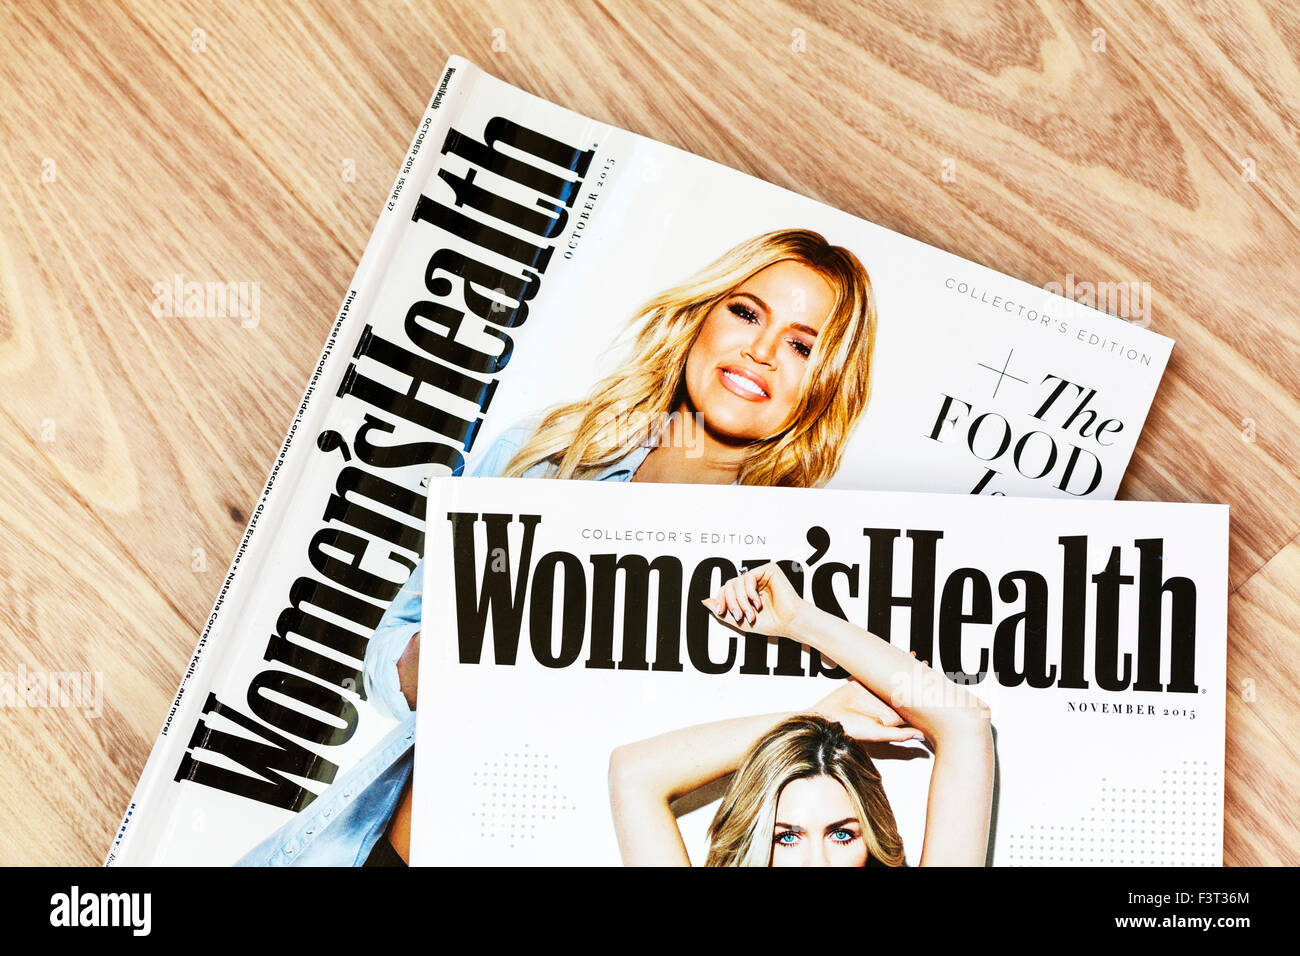 La salud de la mujer revista mujer suscripción mensual womens lifestyle mag UK Inglaterra Foto de stock